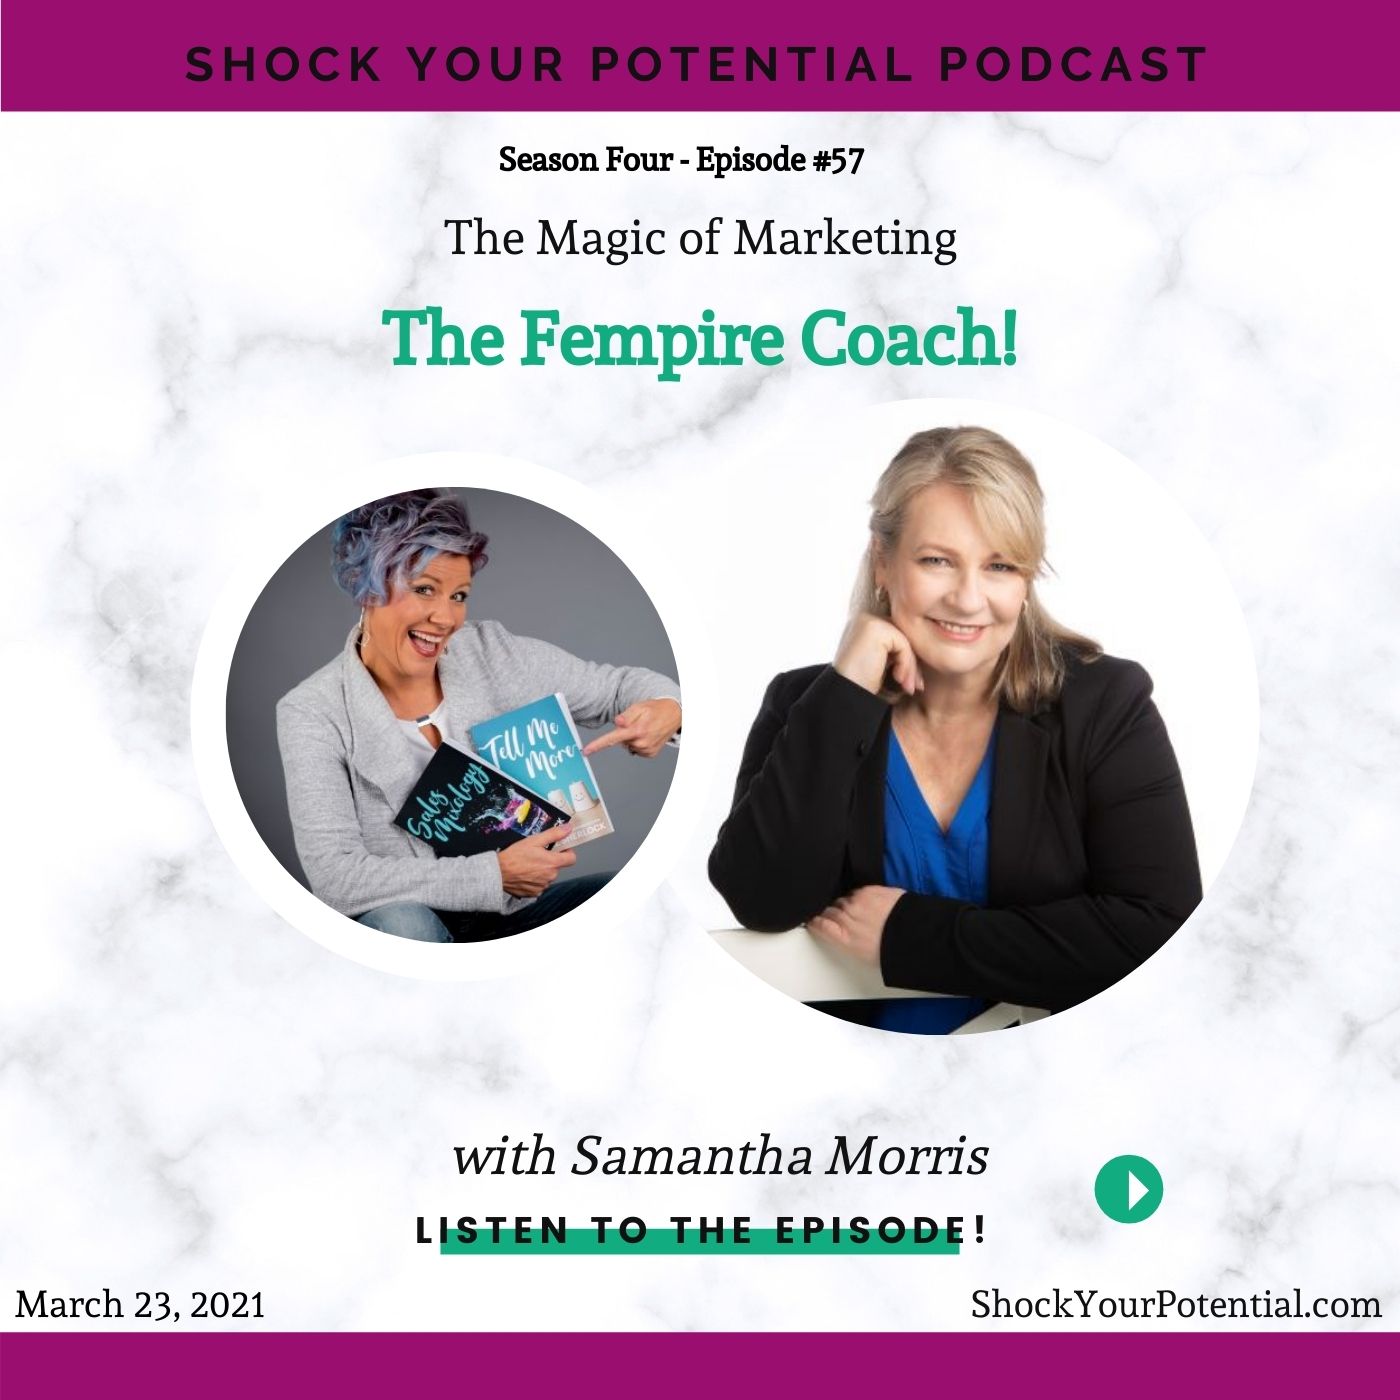 The Fempire Coach! – Samantha Morris